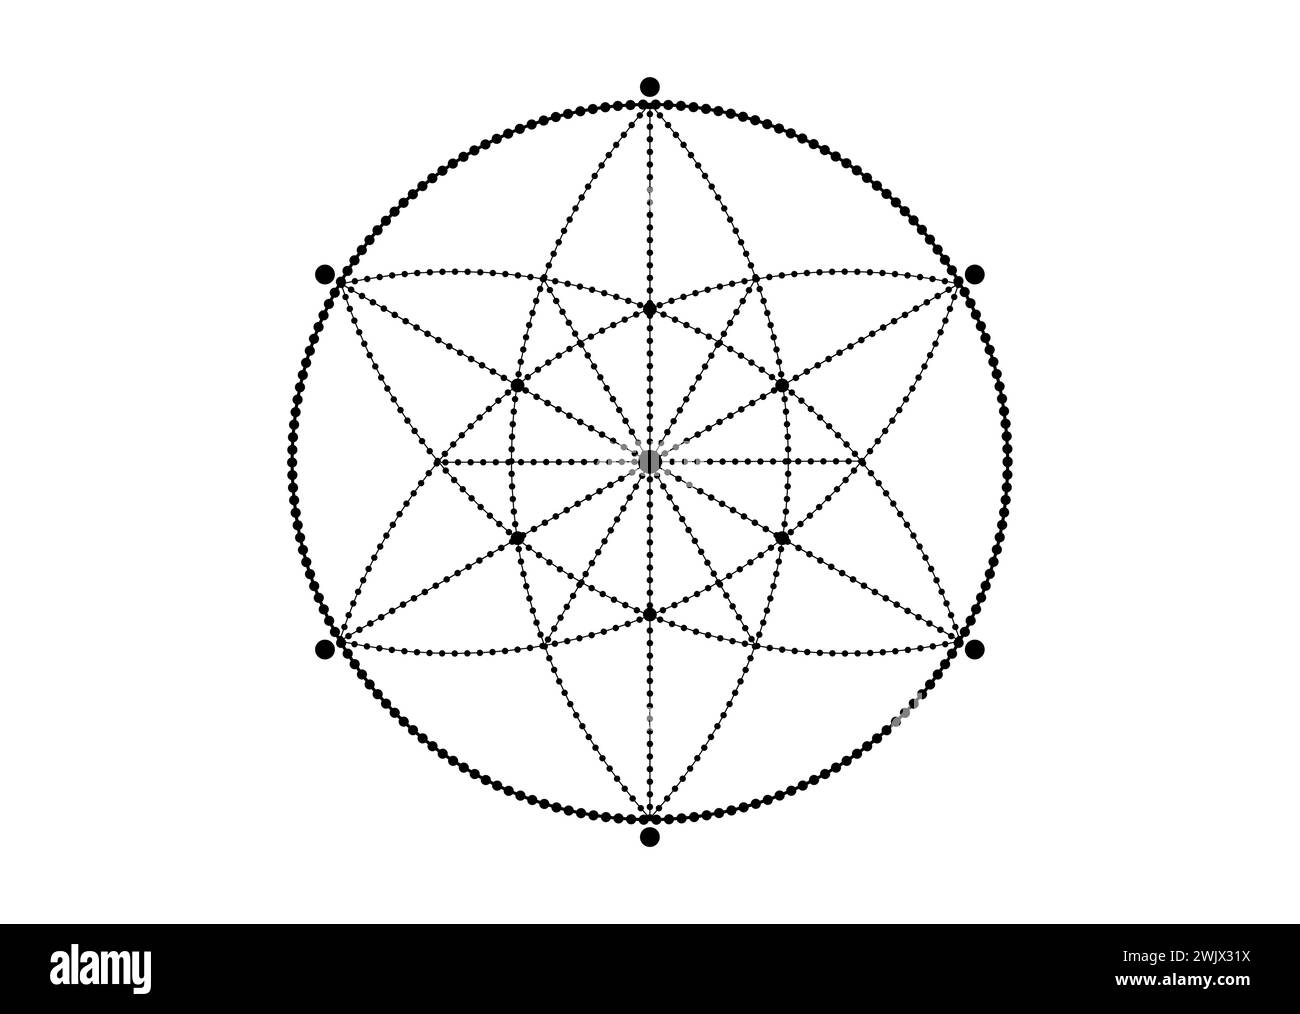 Symbole de graine de vie tatouage de géométrie sacrée. Mandala mystique géométrique de l'alchimie fleur ésotérique de vie. Isolat d'amulette méditative divine vecteur noir Illustration de Vecteur